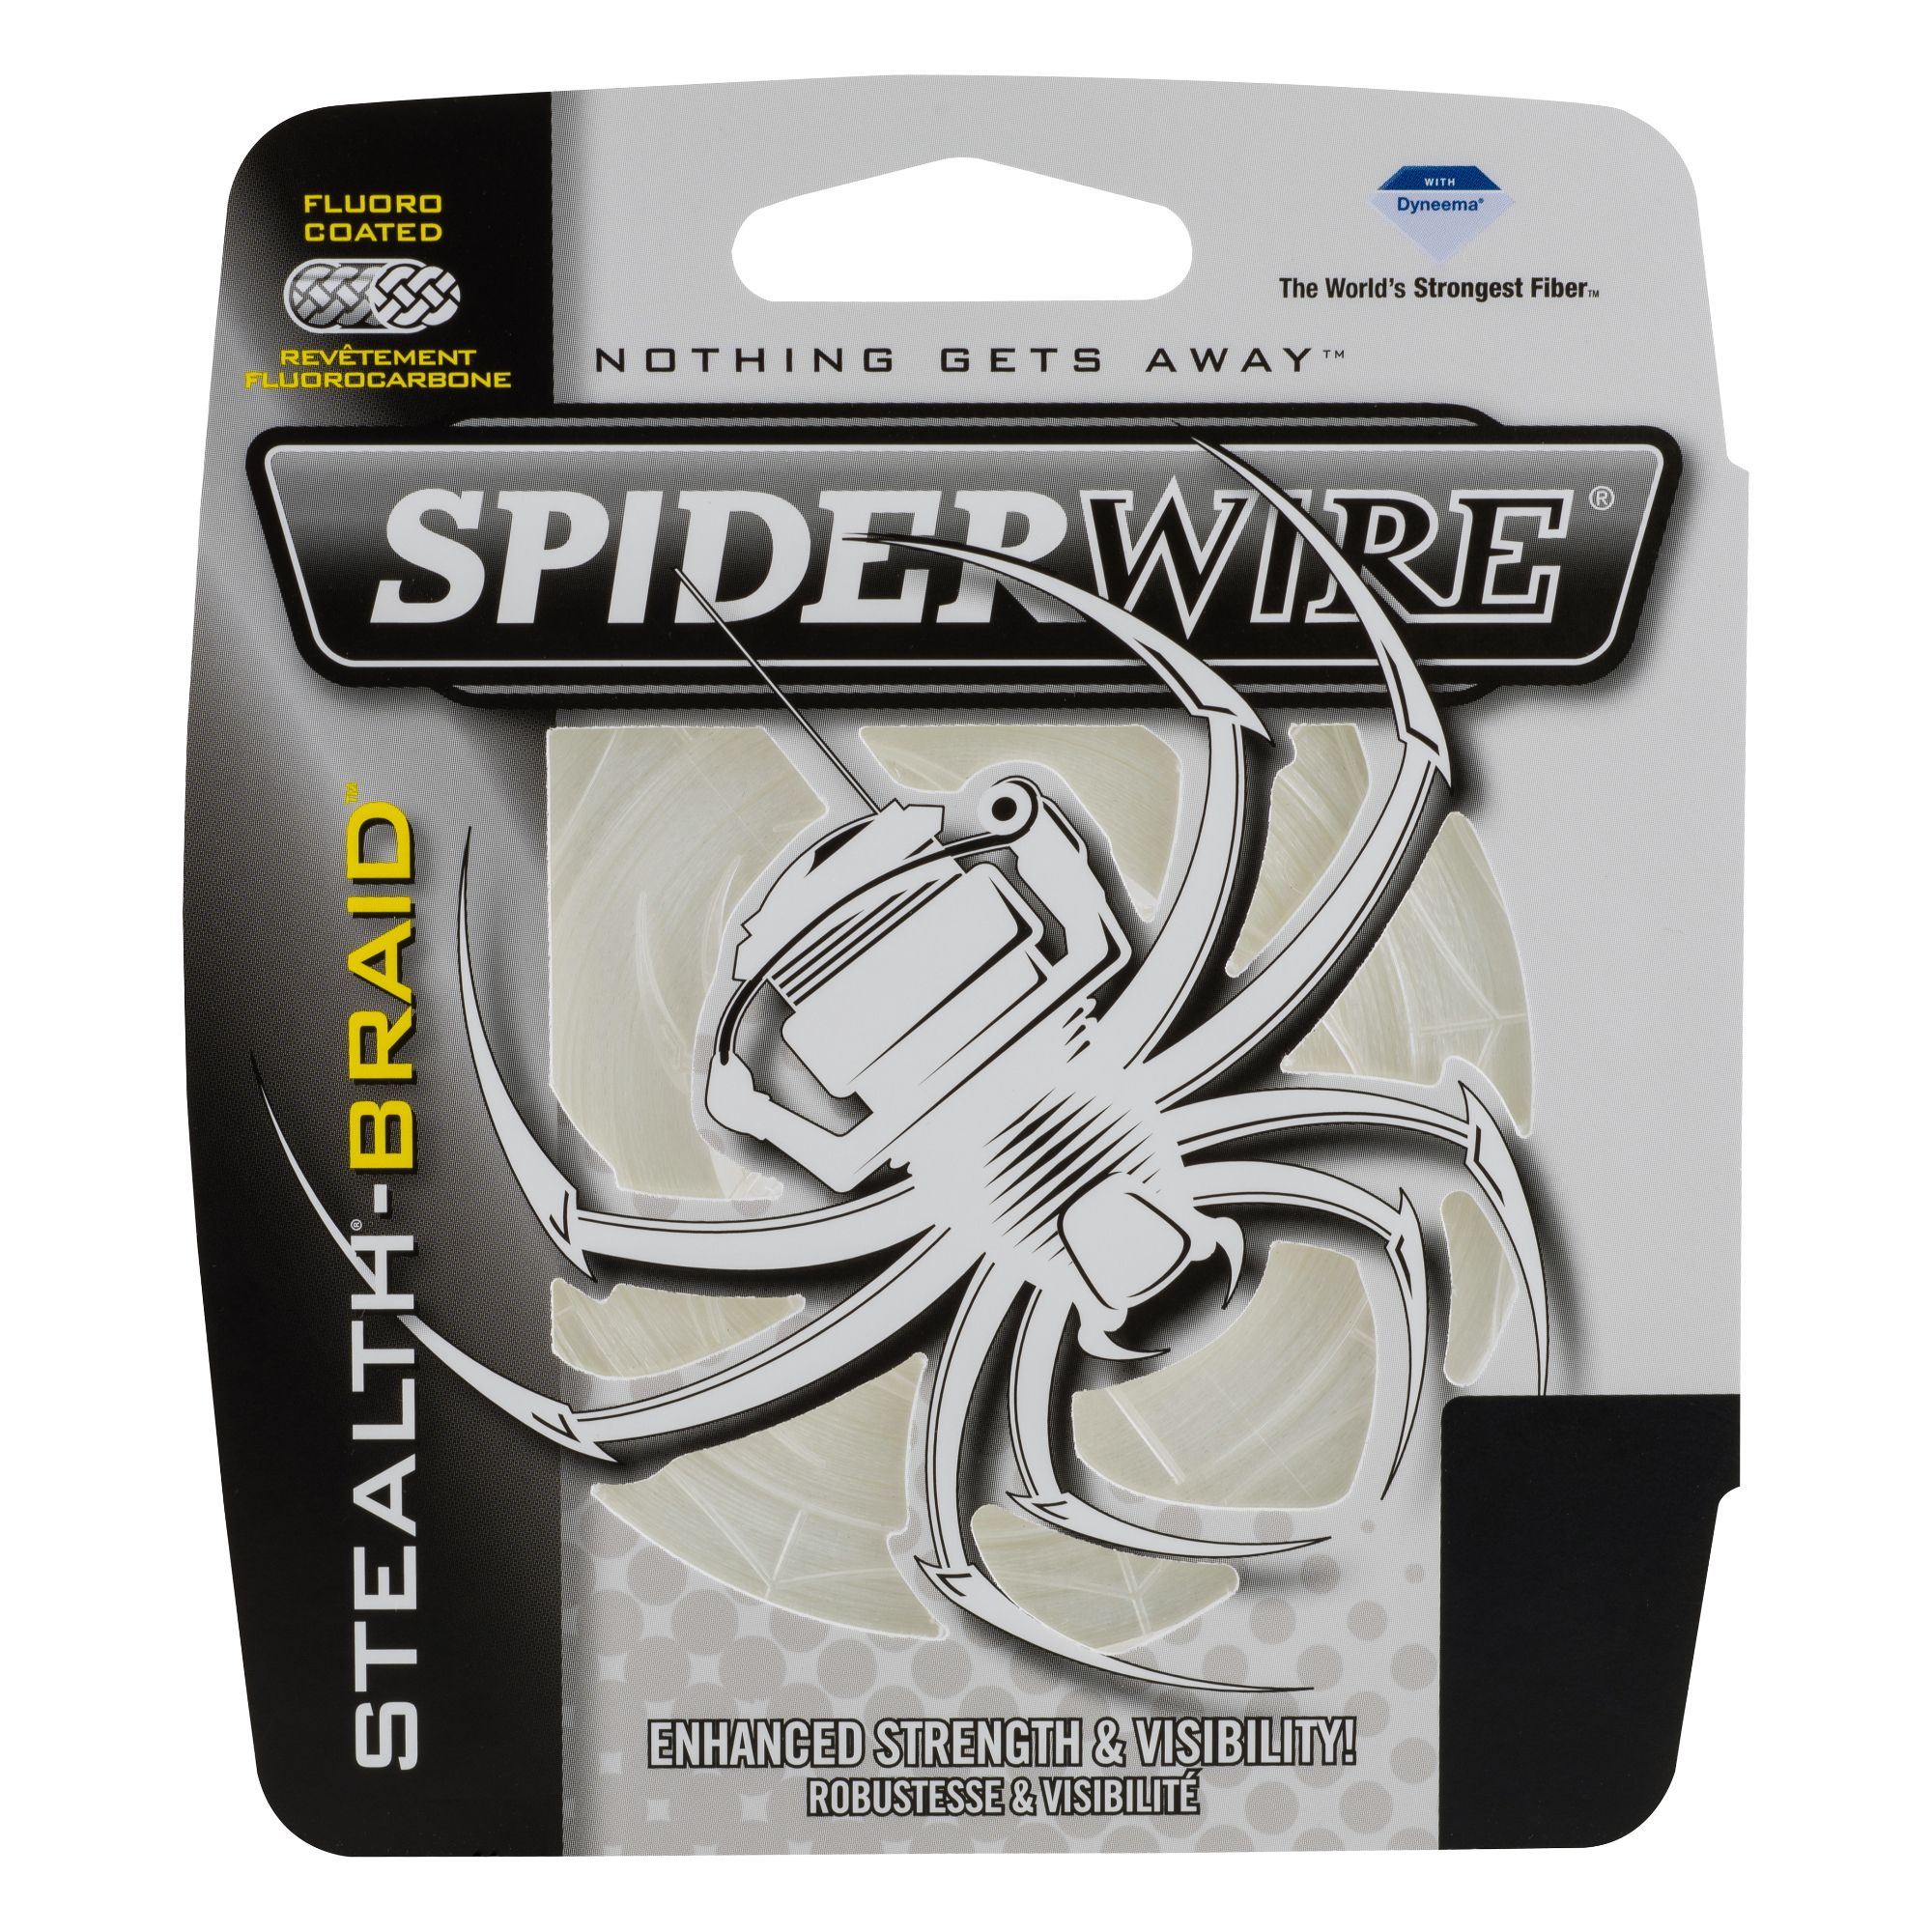 80 lb spiderwire, Off 78%, www.iusarecords.com